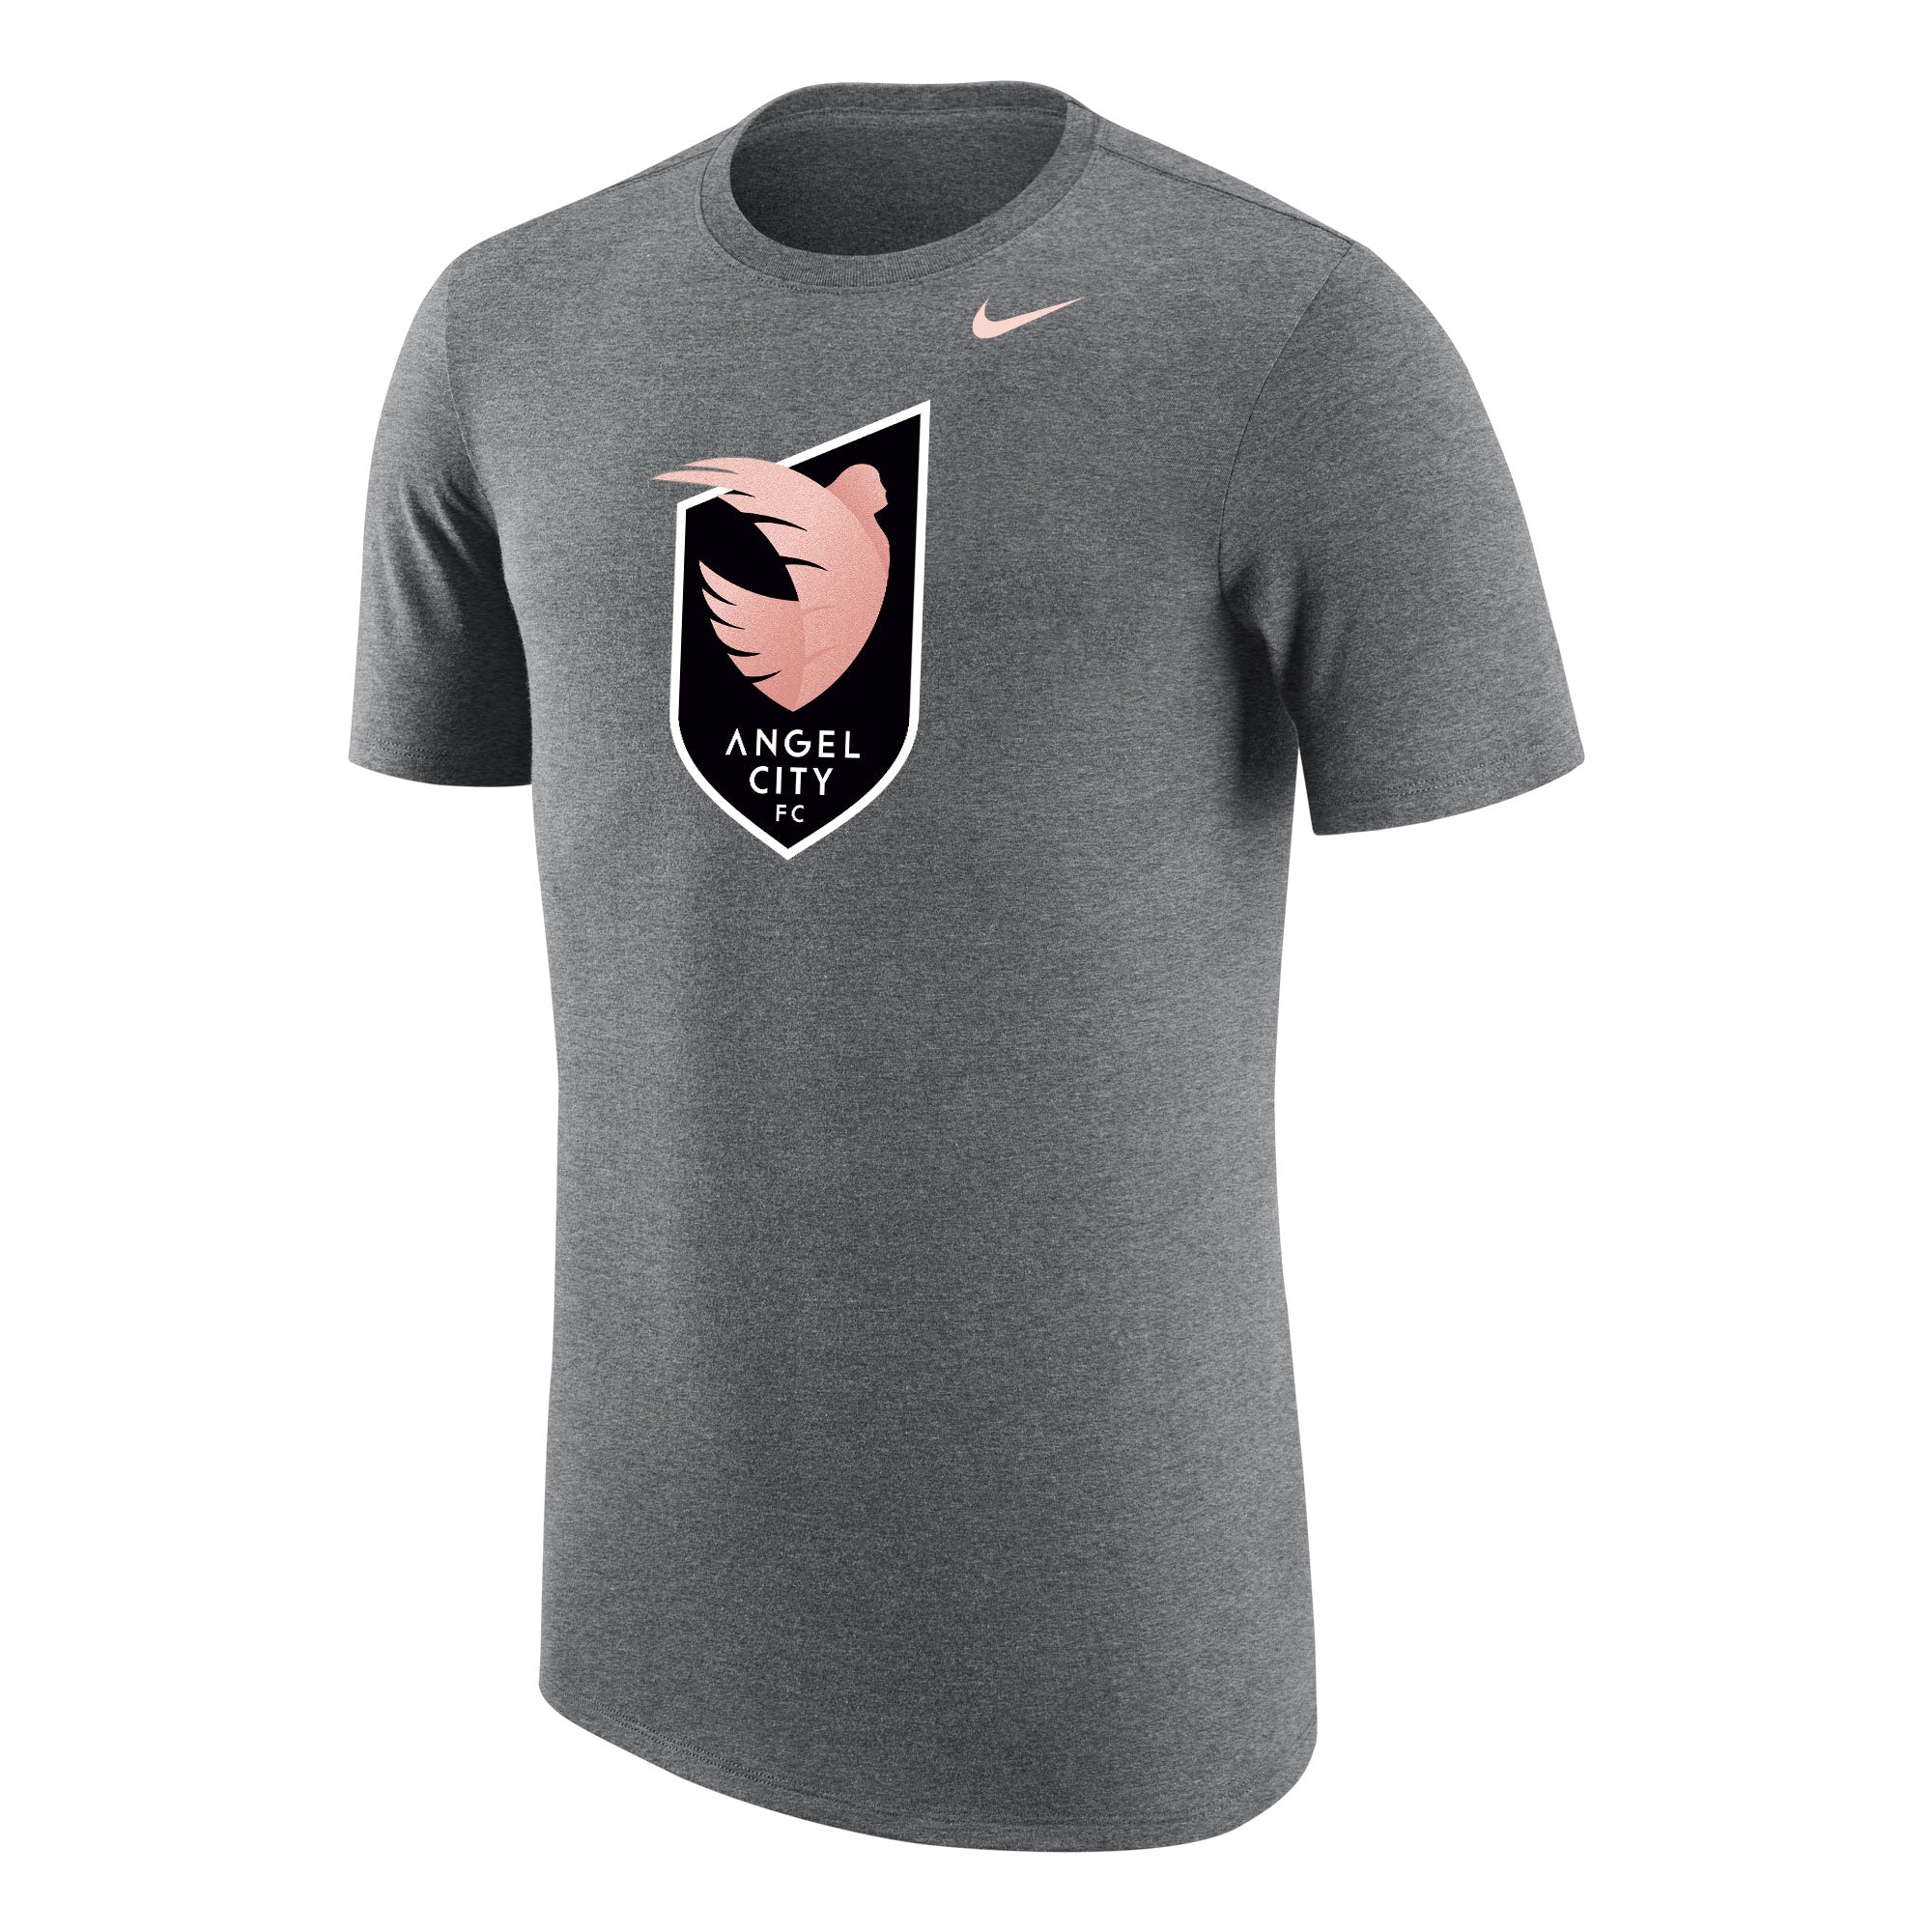 Angel City FC Nike Unisex Sol Rosa Crest camiseta gris de mezcla triple